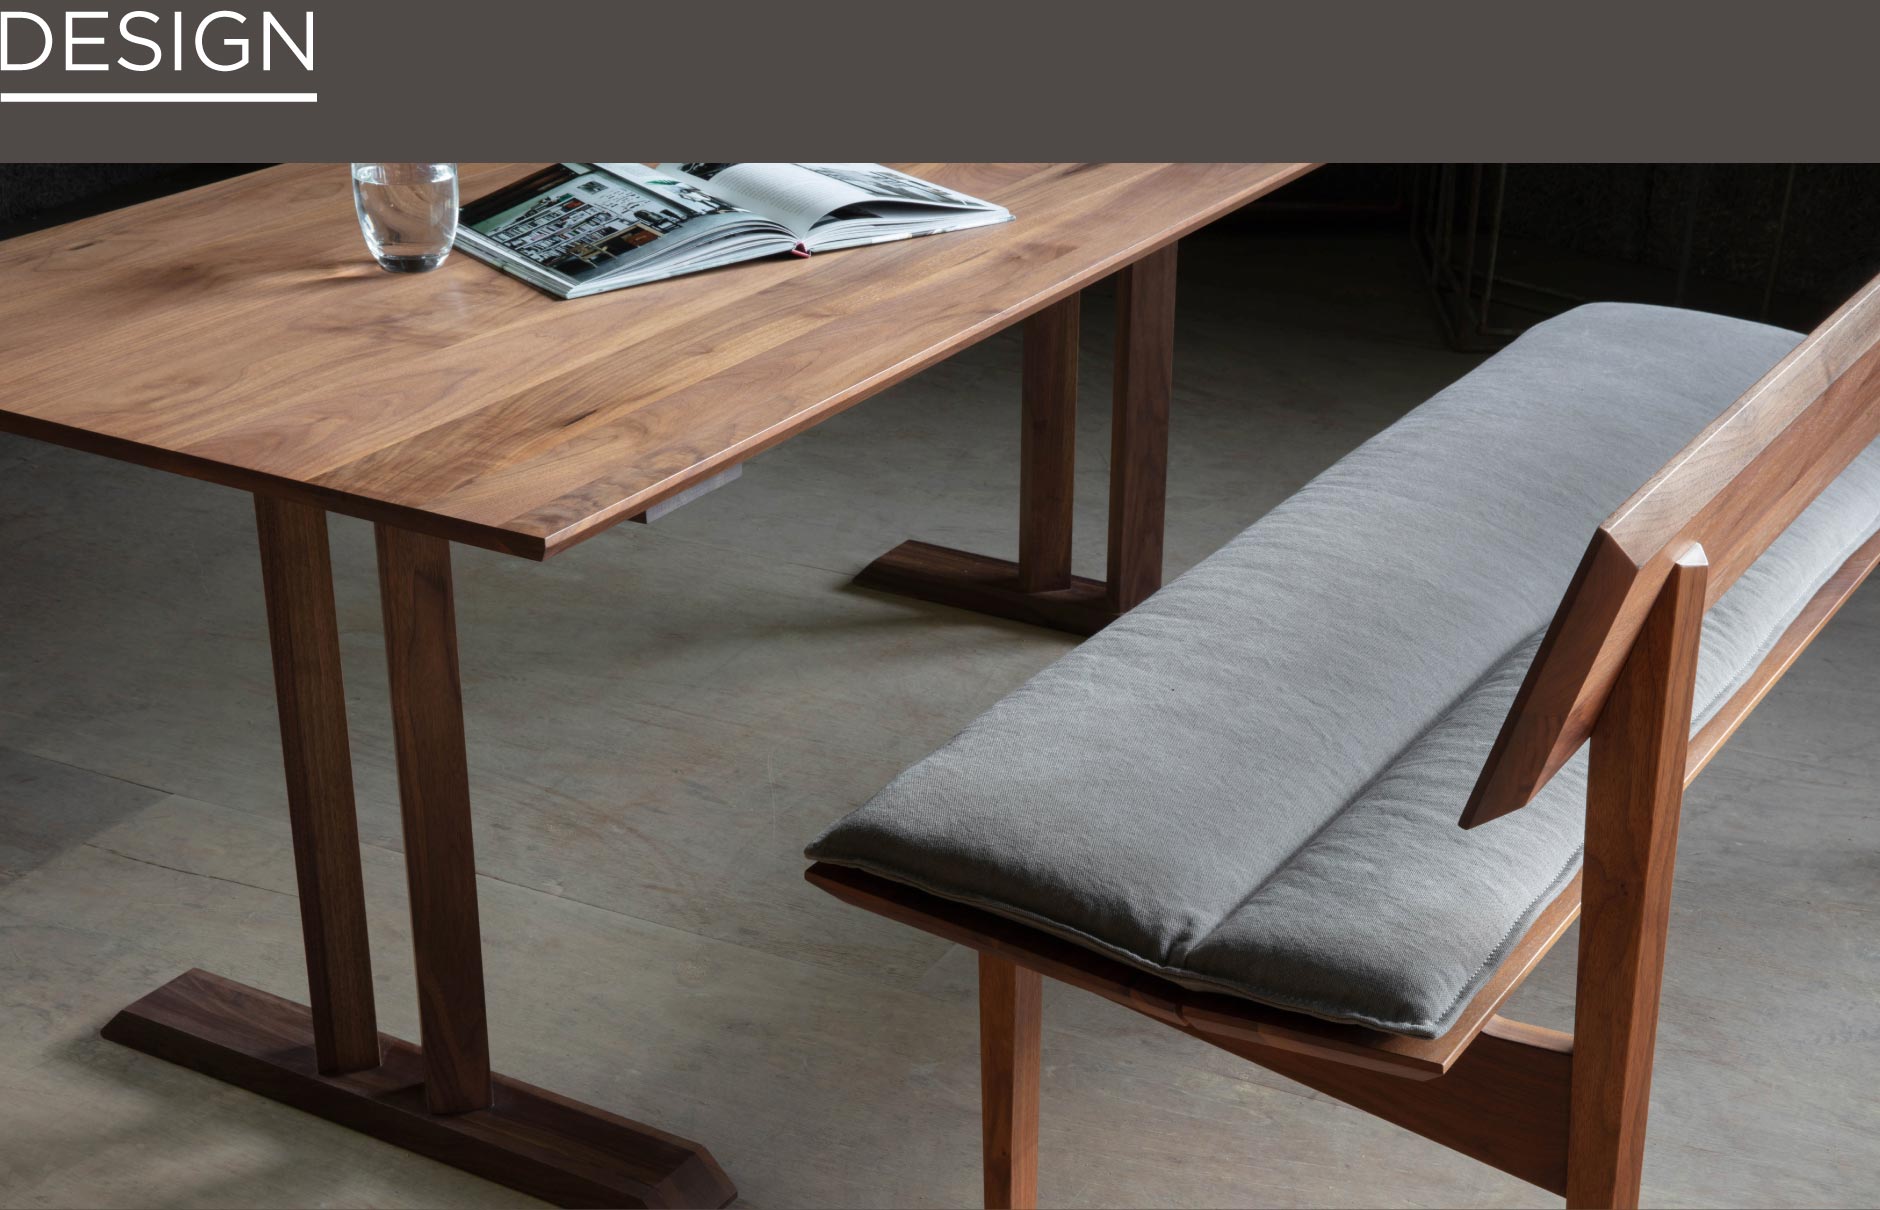 名古屋栄にあるSOLIDの家具でも人気な幅広く出入りもしやすいダイニングテーブルです。無垢材を贅沢に使い洗練されたT字のデザインも特徴的。